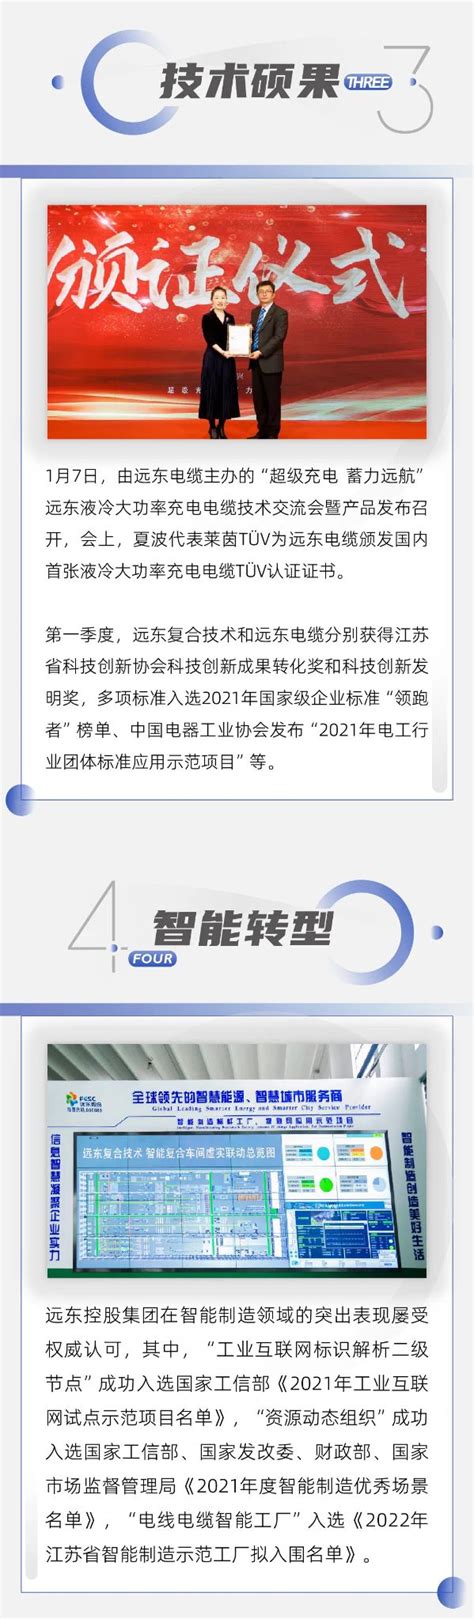 远东控股集团荣获2019中国最具创新力知识型组织（MIKE）大奖-中青汽车